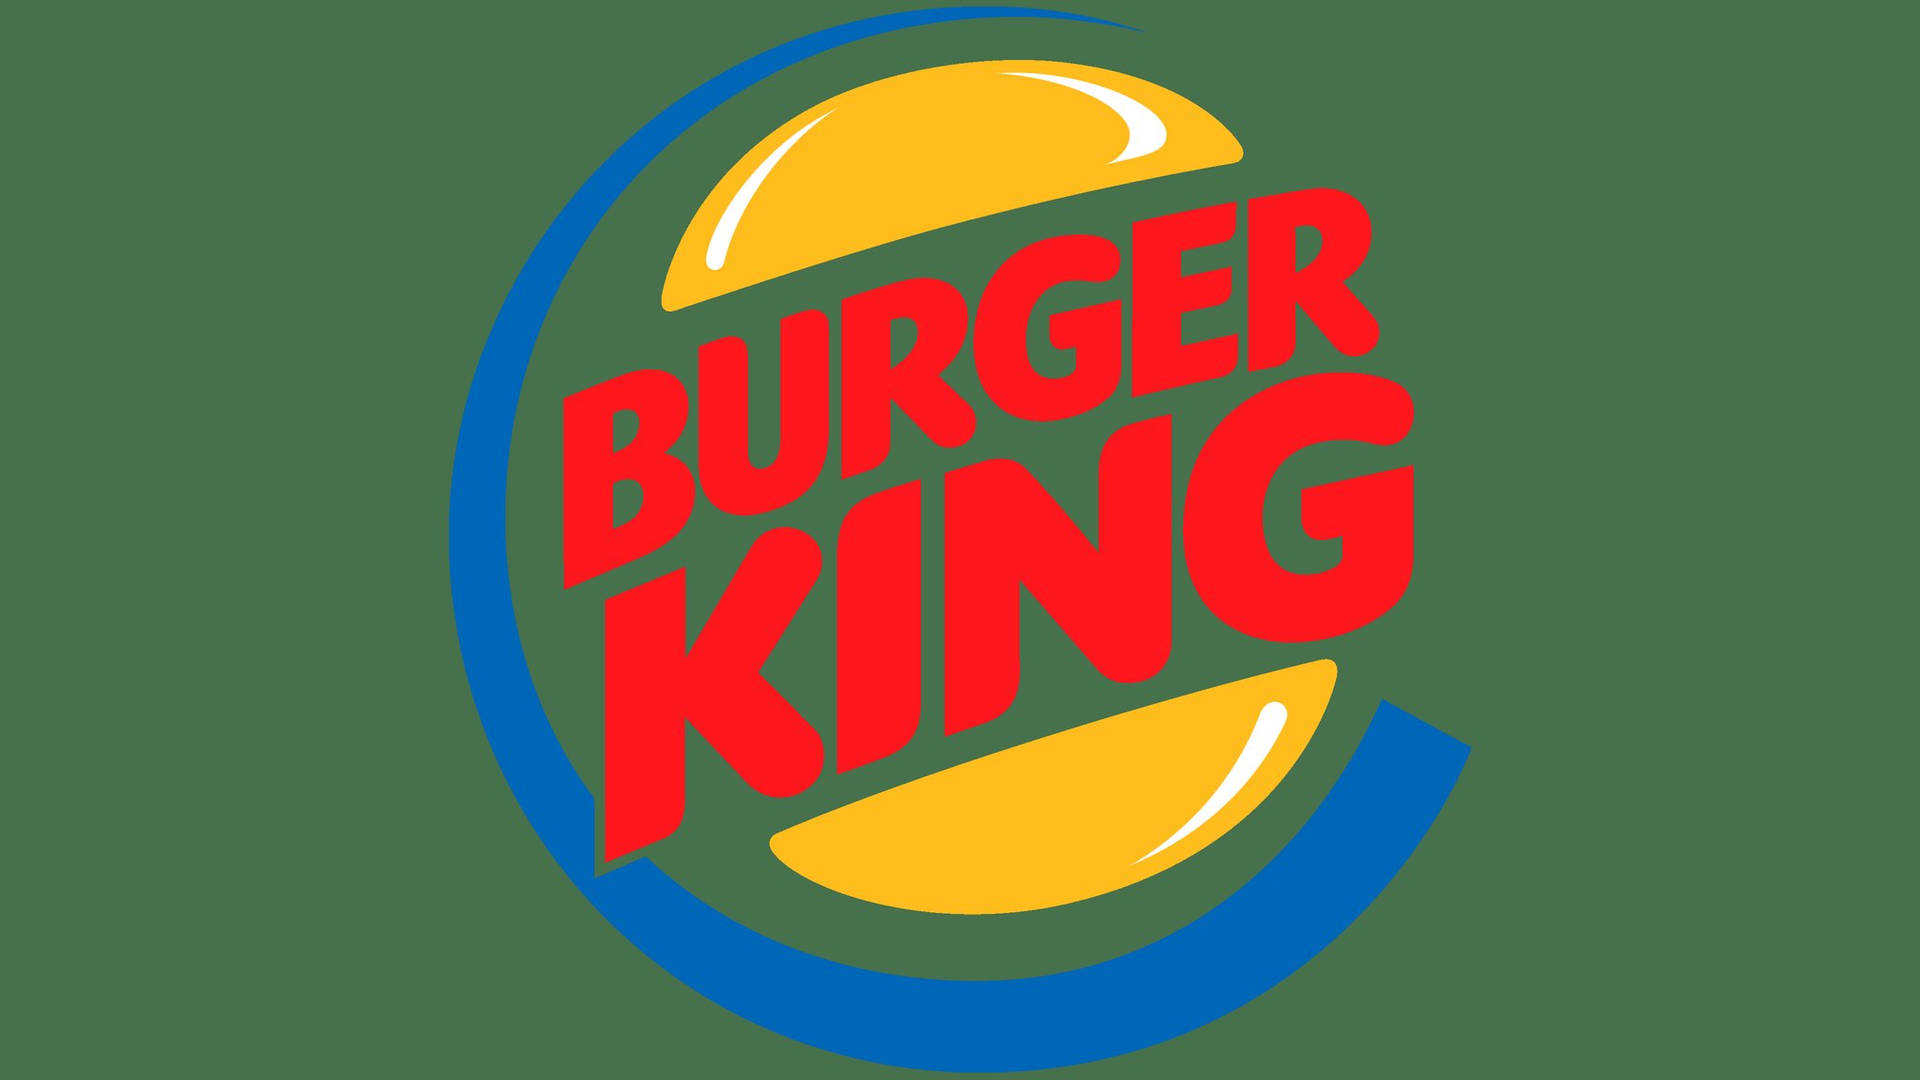 Burger King Logo Wallpaper